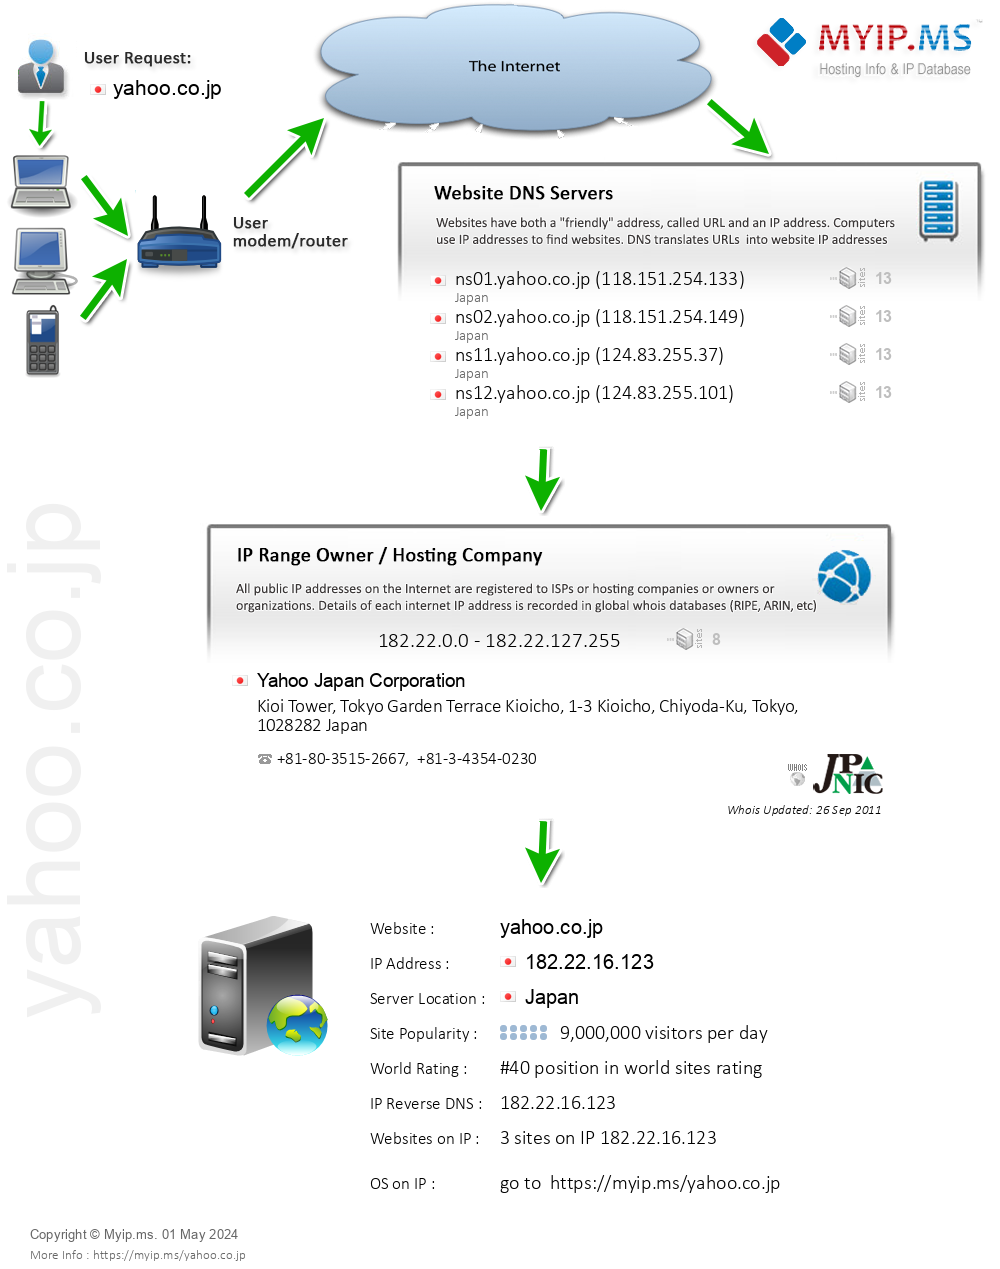 Yahoo.co.jp - Website Hosting Visual IP Diagram